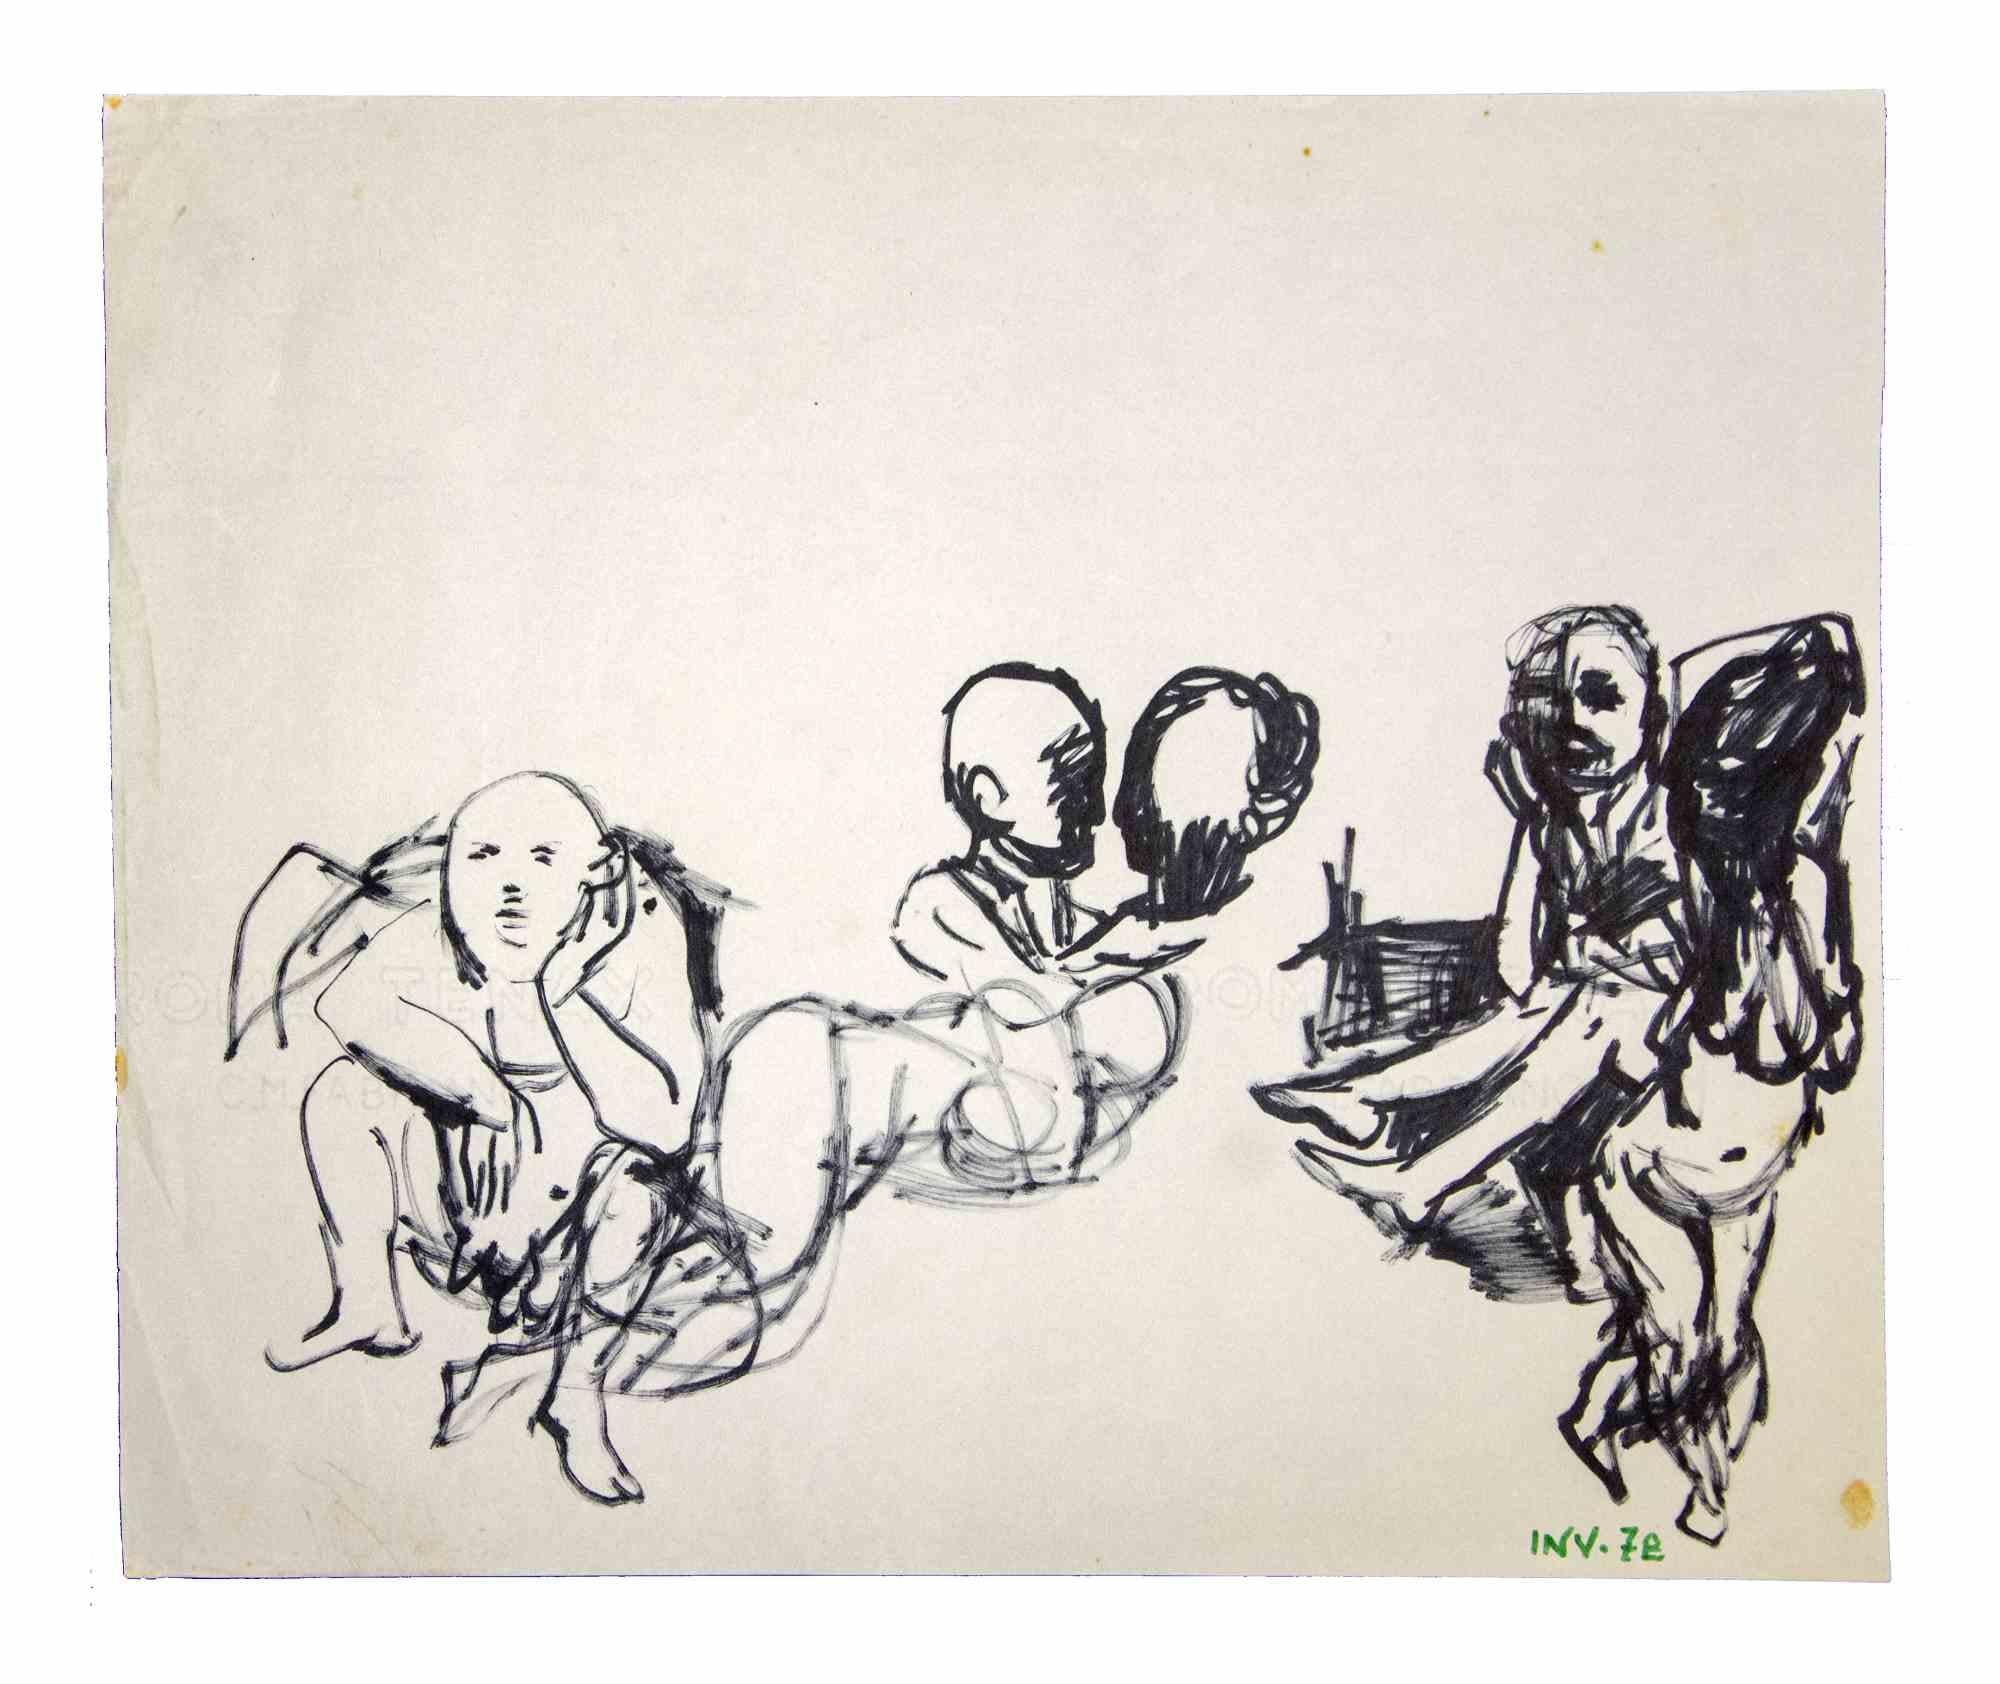 Posing figures sketch ist ein Originalwerk des italienischen Künstlers AM Contemporary aus den 1970er Jahren.  Leo Guida  (1992 - 2017).

Originalzeichnung mit schwarzem Marker auf elfenbeinfarbenem Papier.

Guter Zustand mit leichten Stockflecken